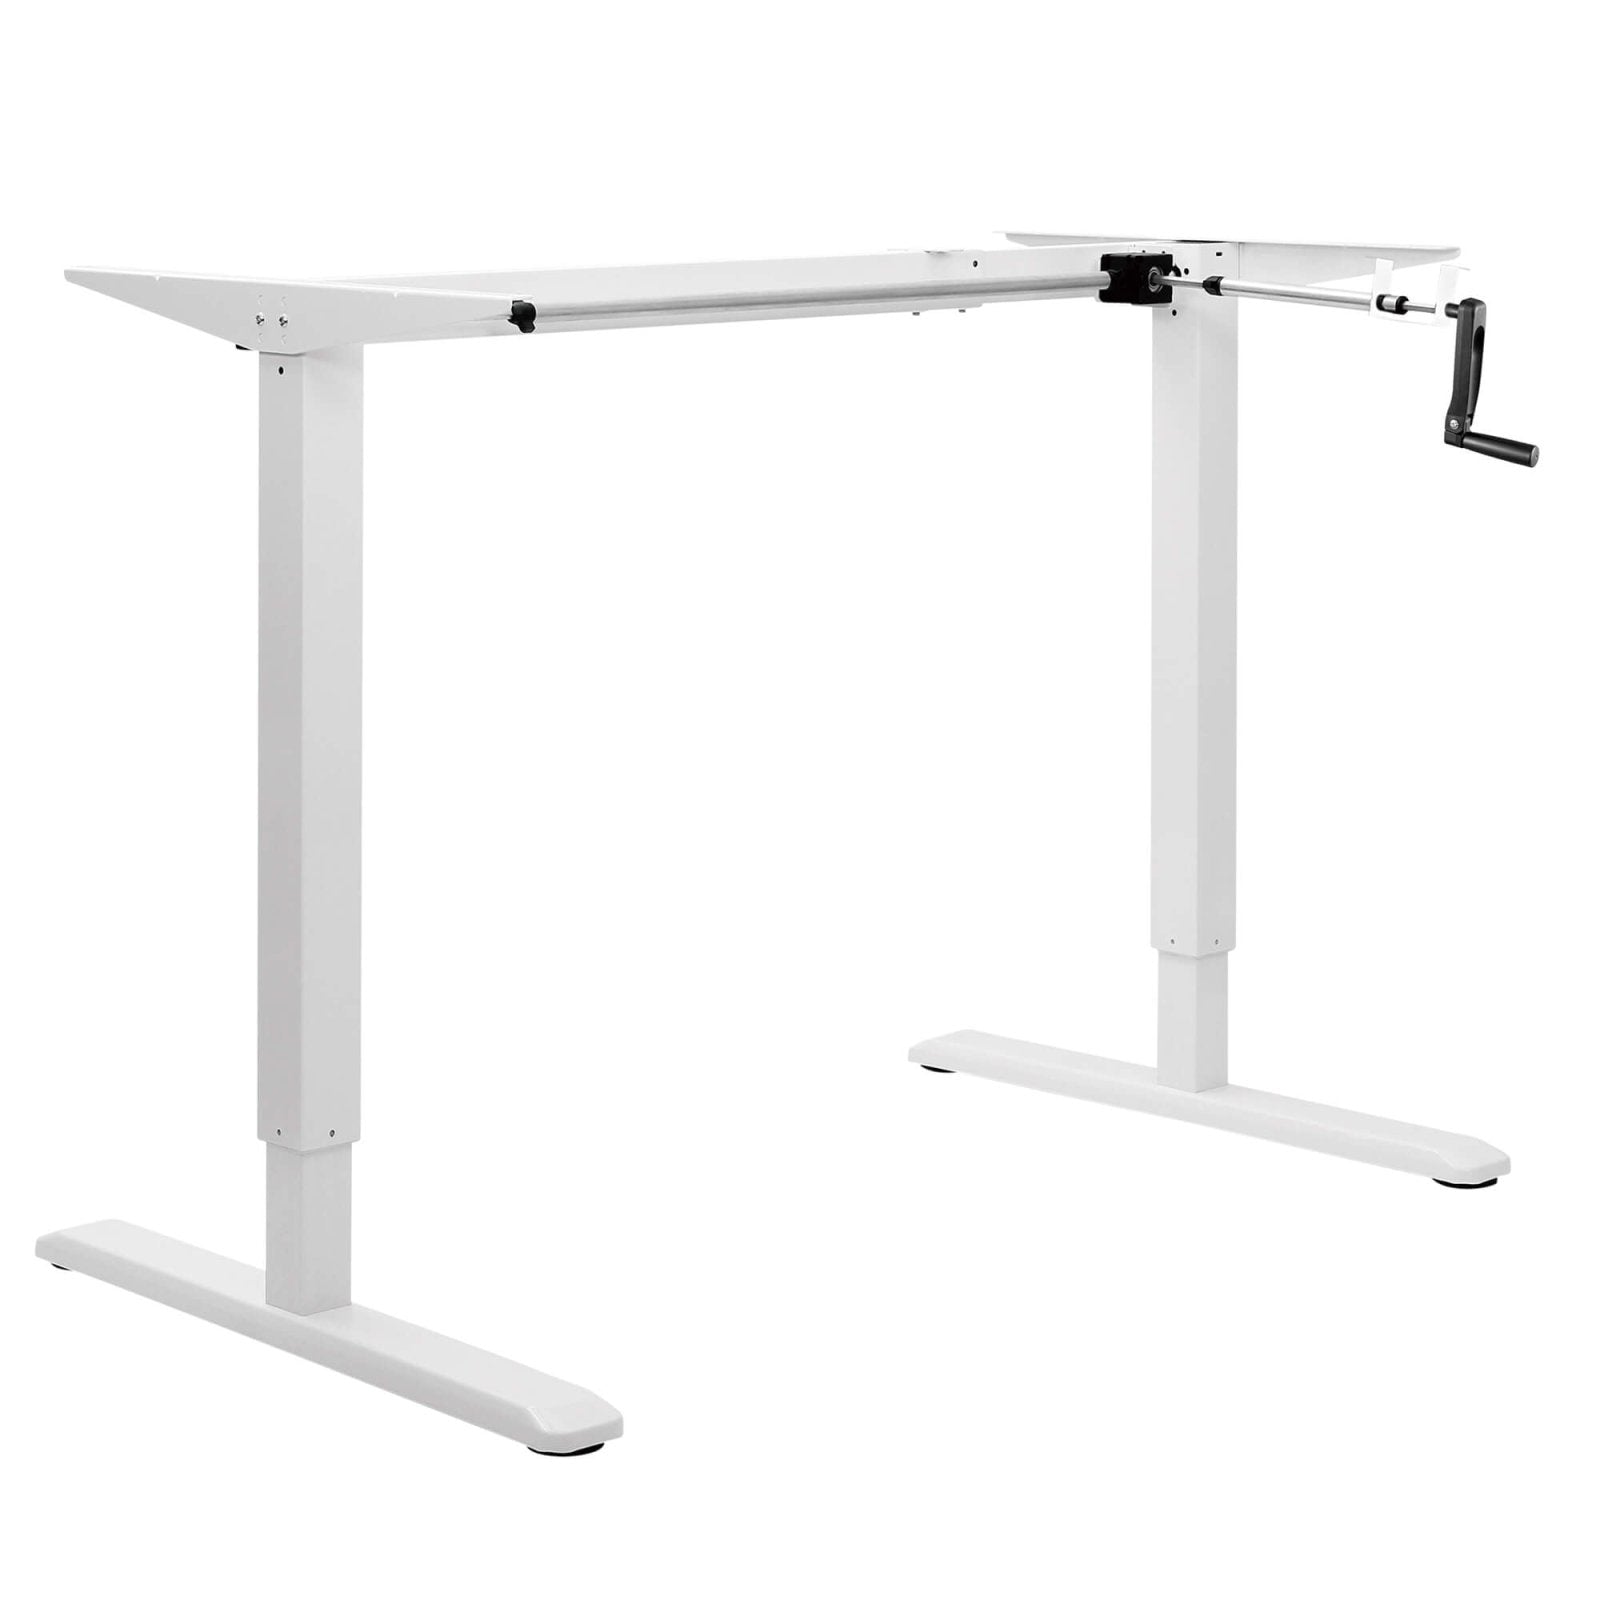 StandXT B02-22 Eco manuell höhenverstellbarer Schreibtisch - mit Handkurbel - StandXT - Höhenverstellbare Tische